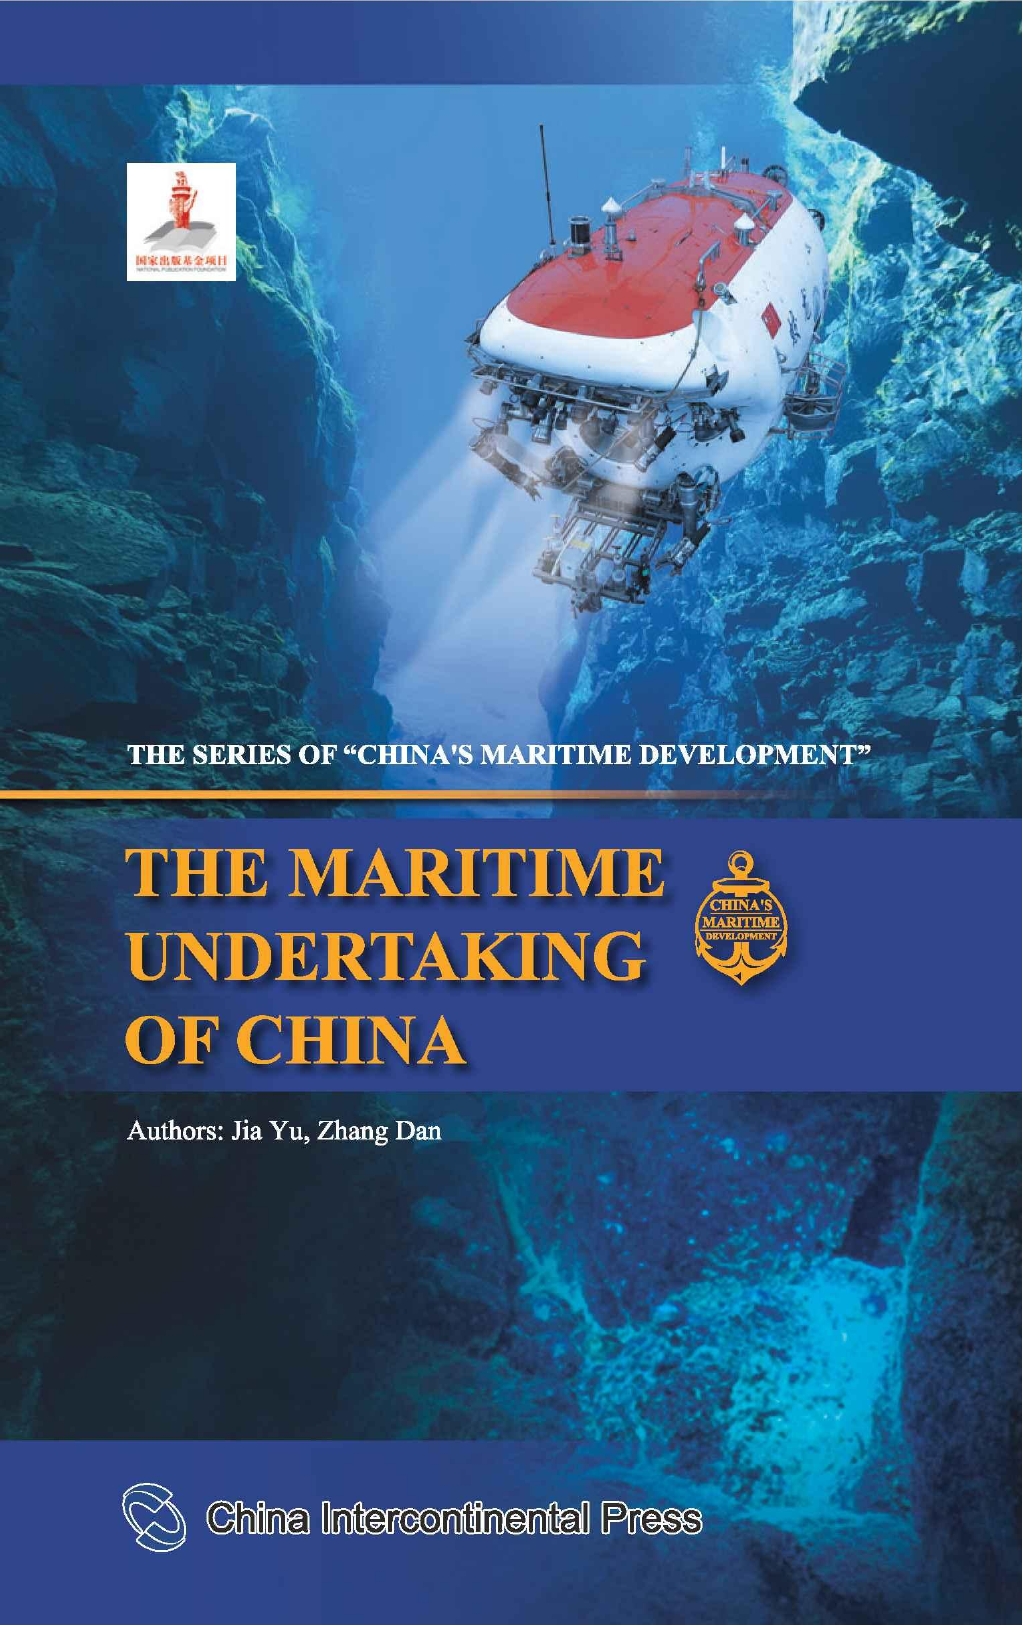 The Maritime undertaking of China